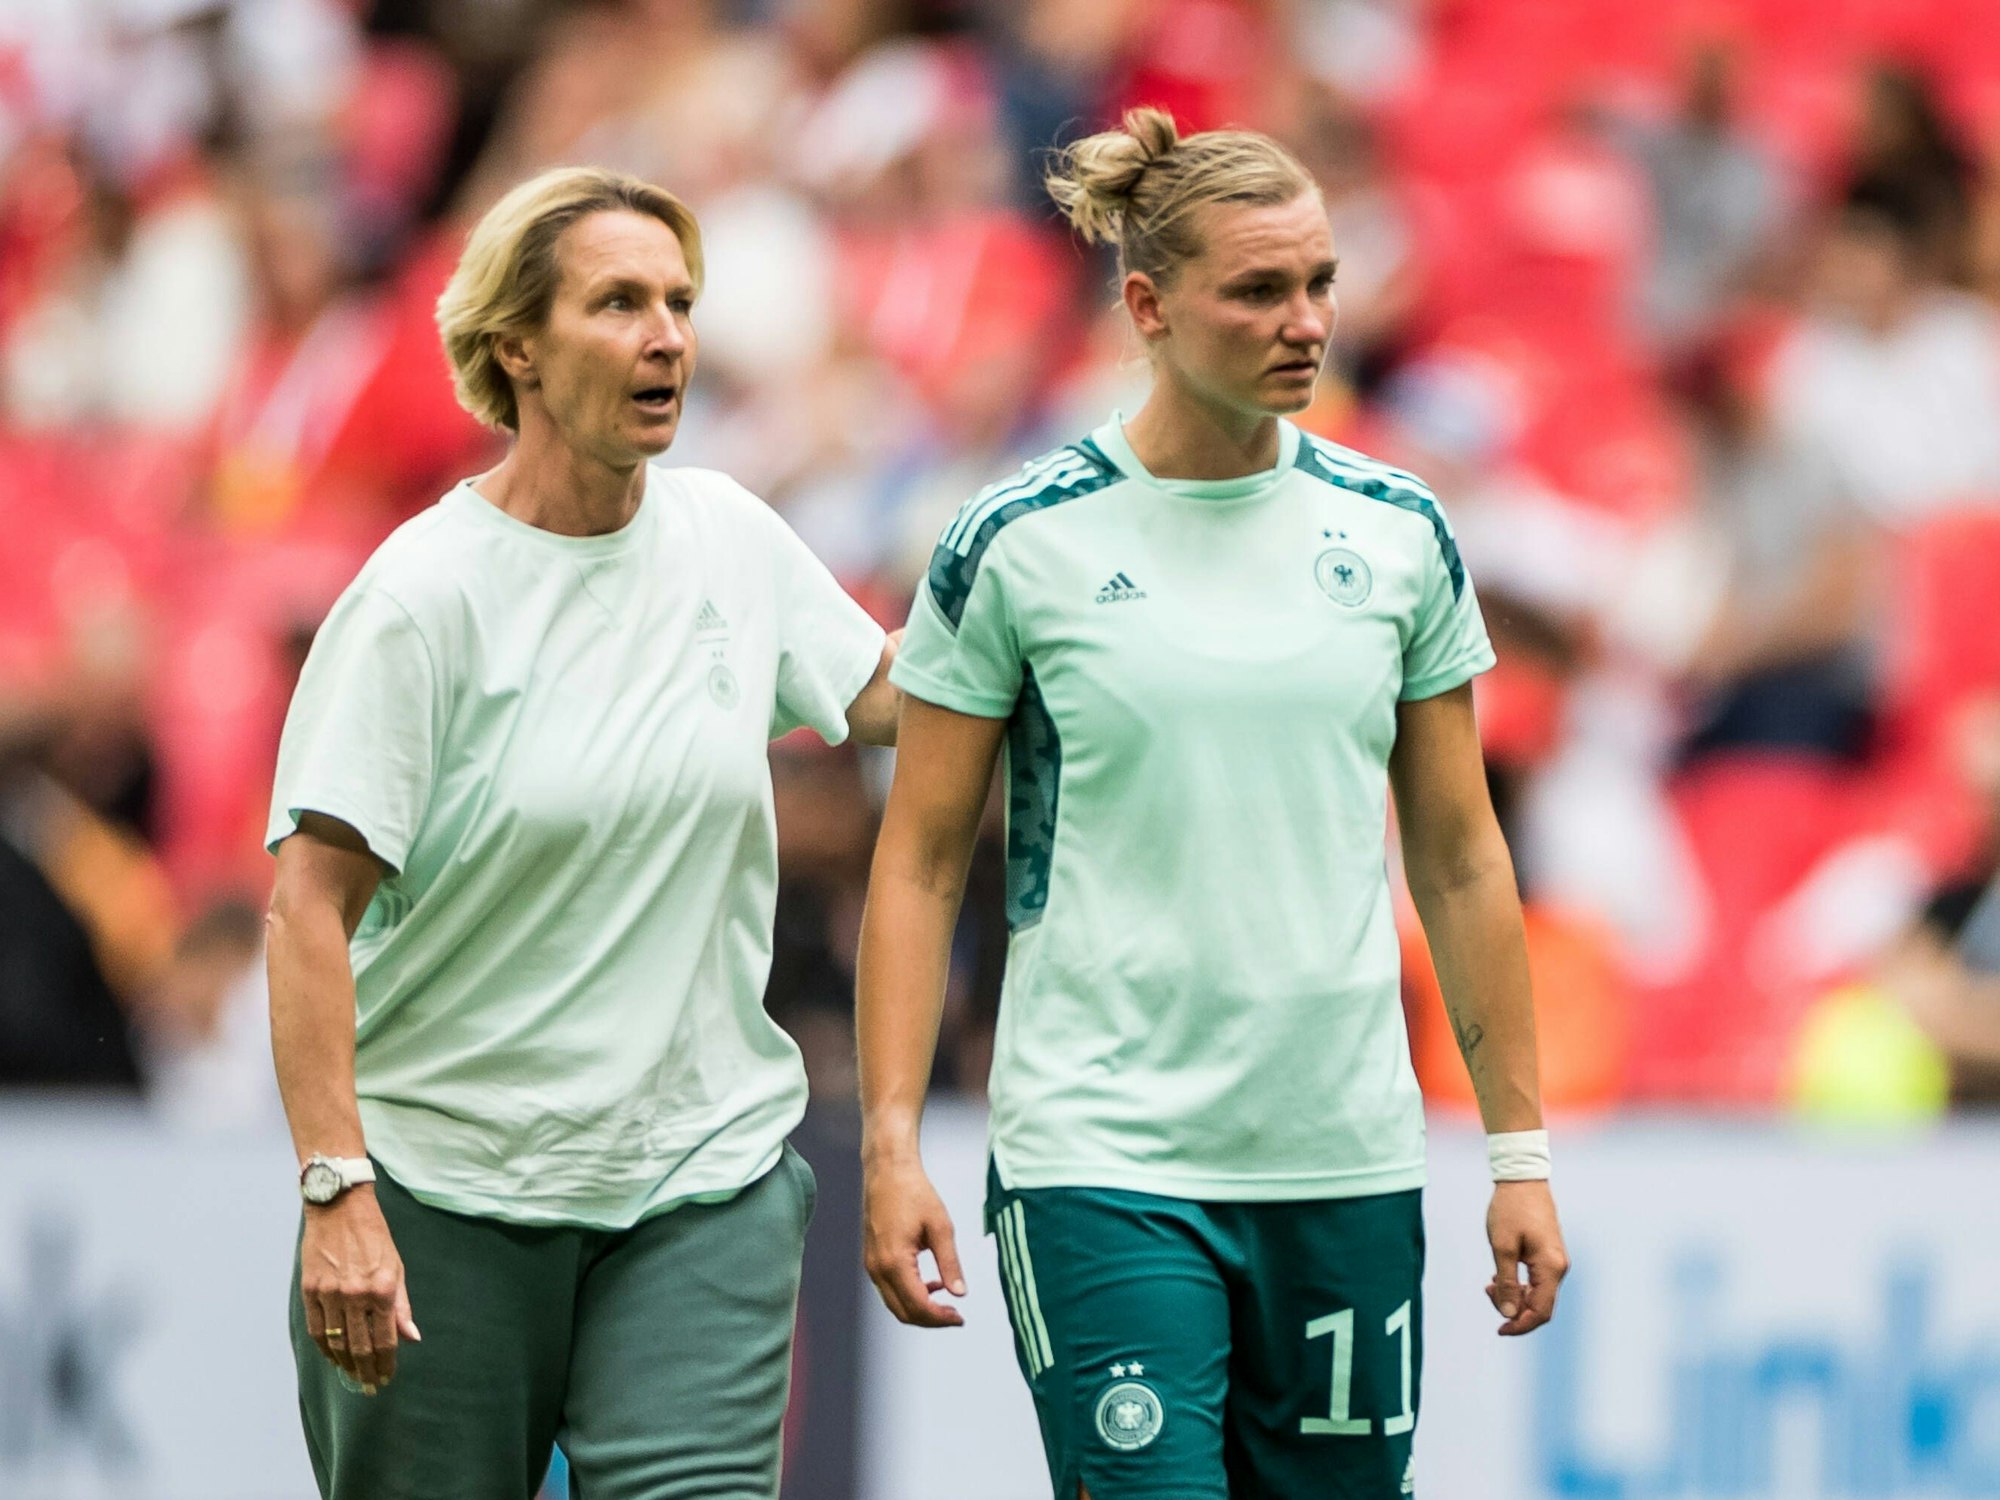 Bundestrainerin Martina Voss-Tecklenburg klopft ihrer Spielerin Alexandra Popp auf die Schulter. Popp weint.